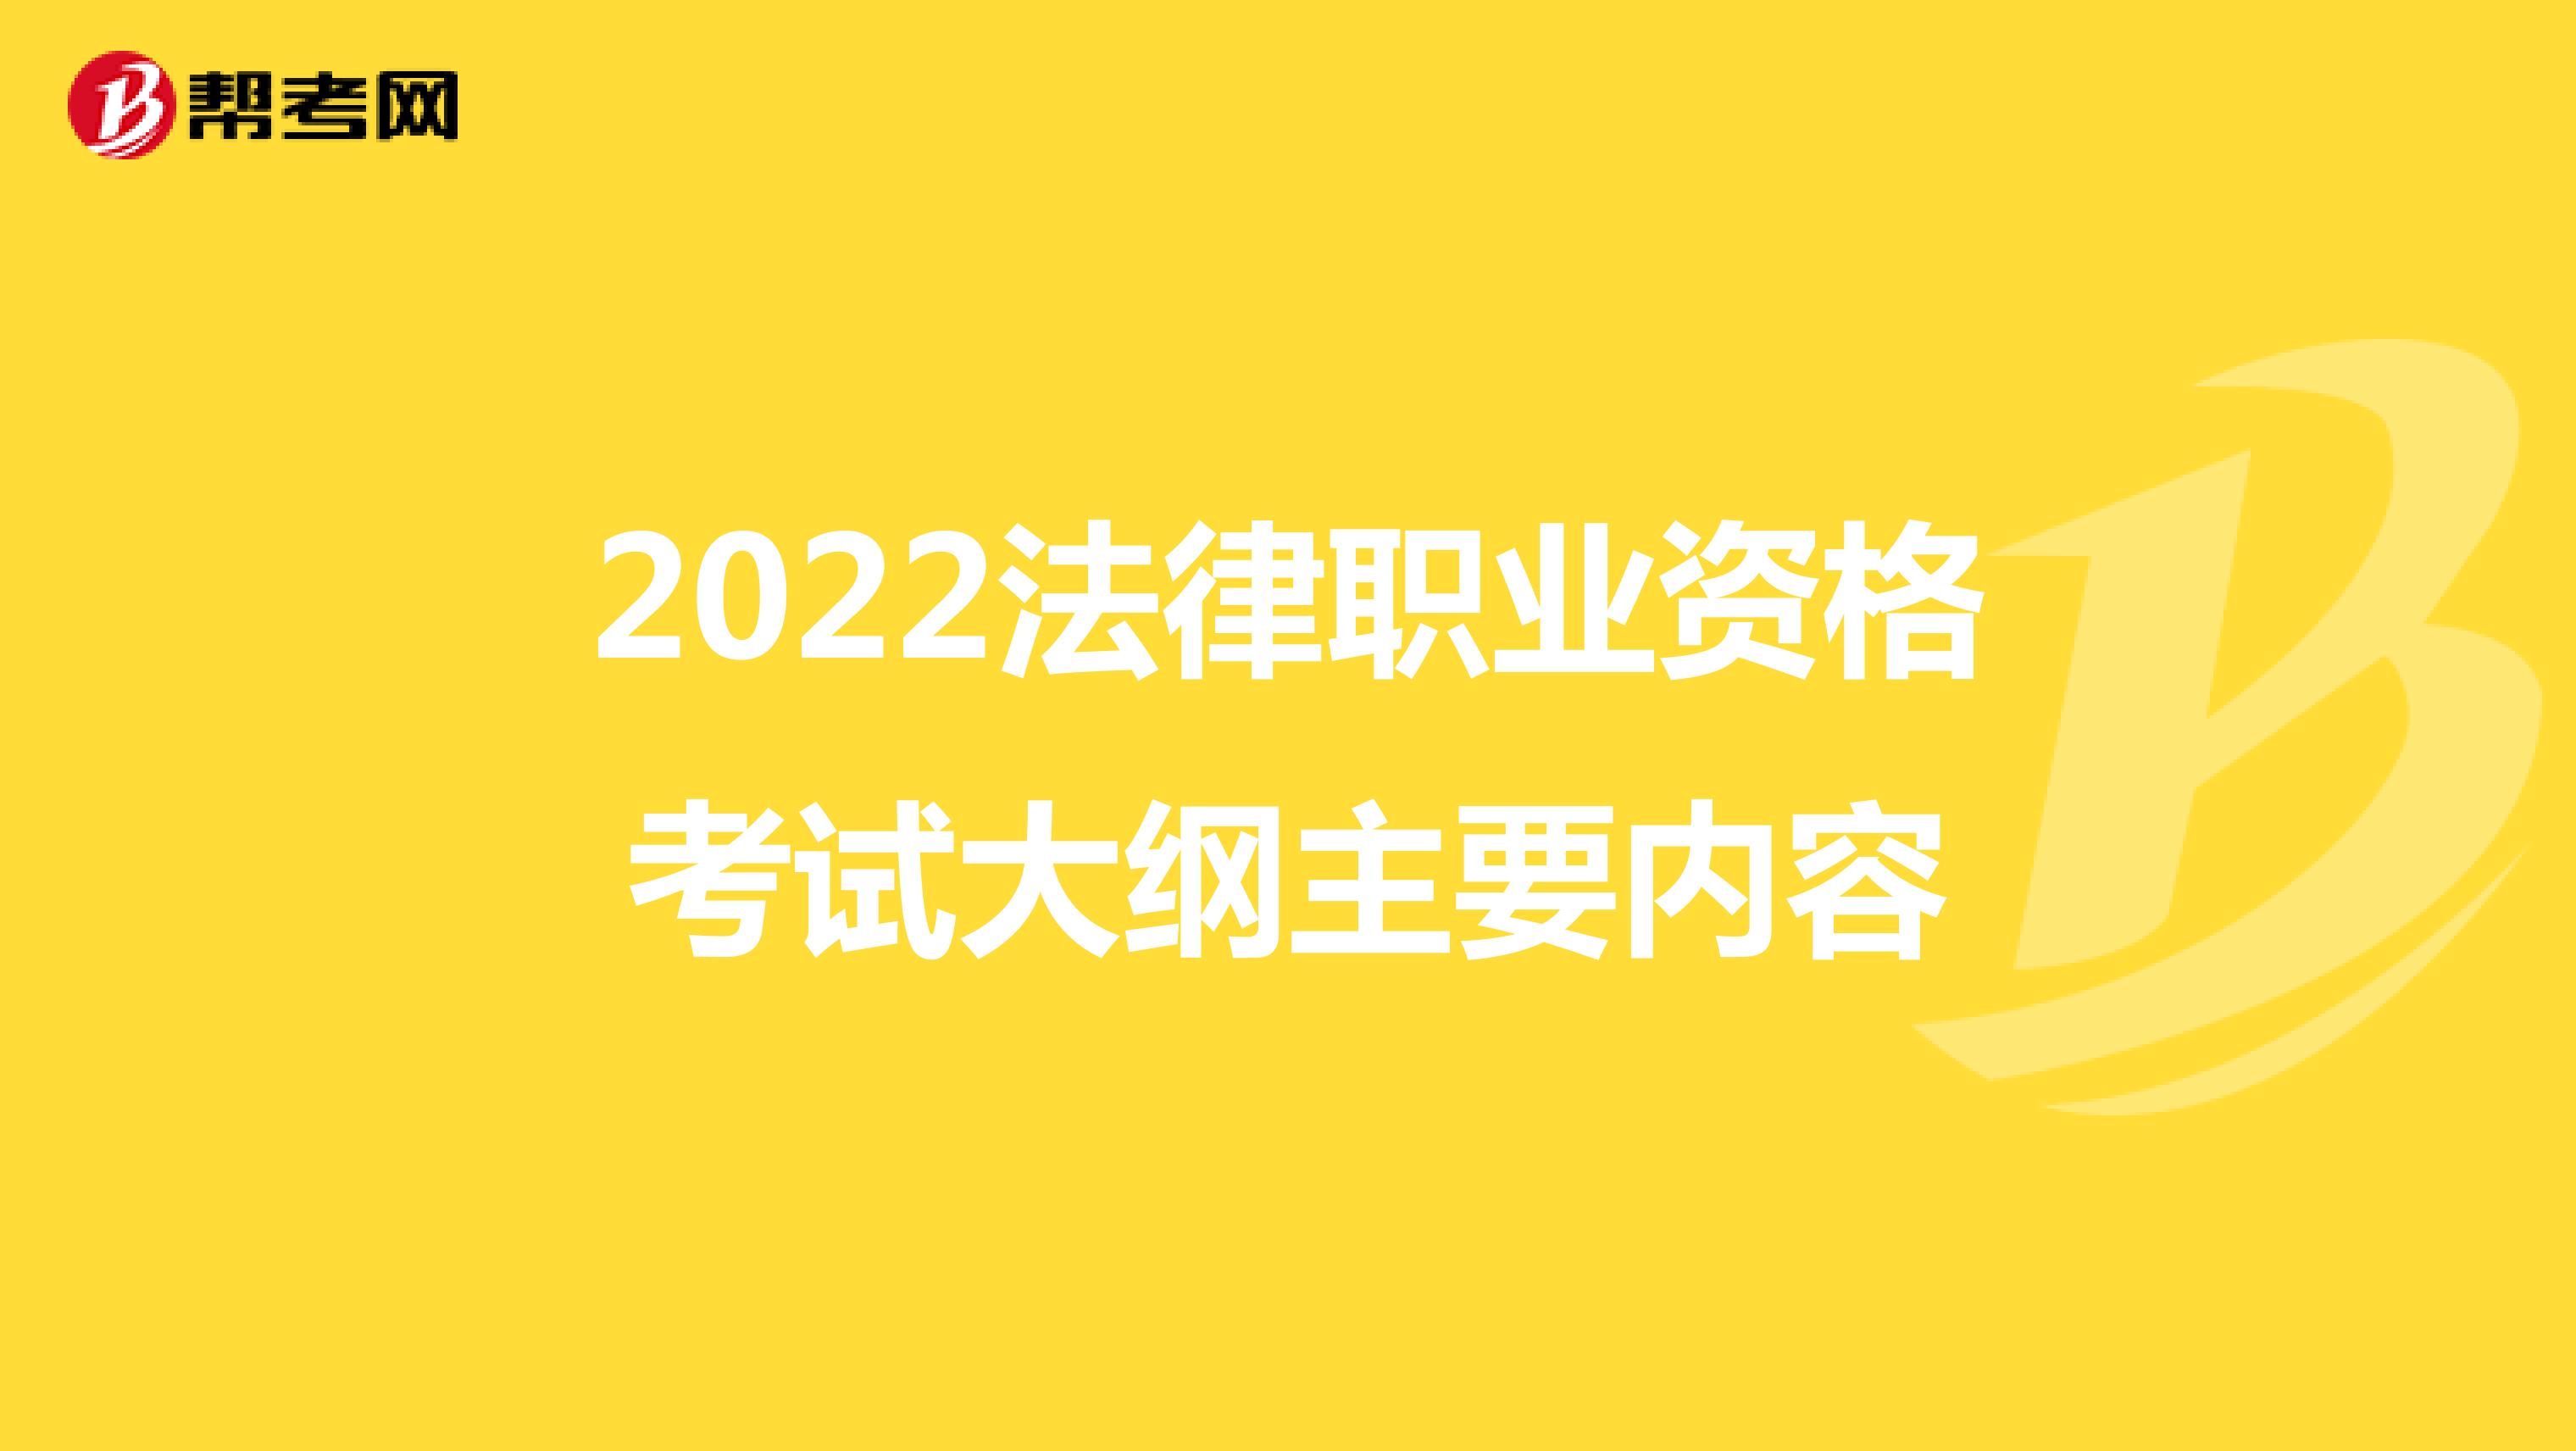 2022法律职业资格考试大纲主要内容